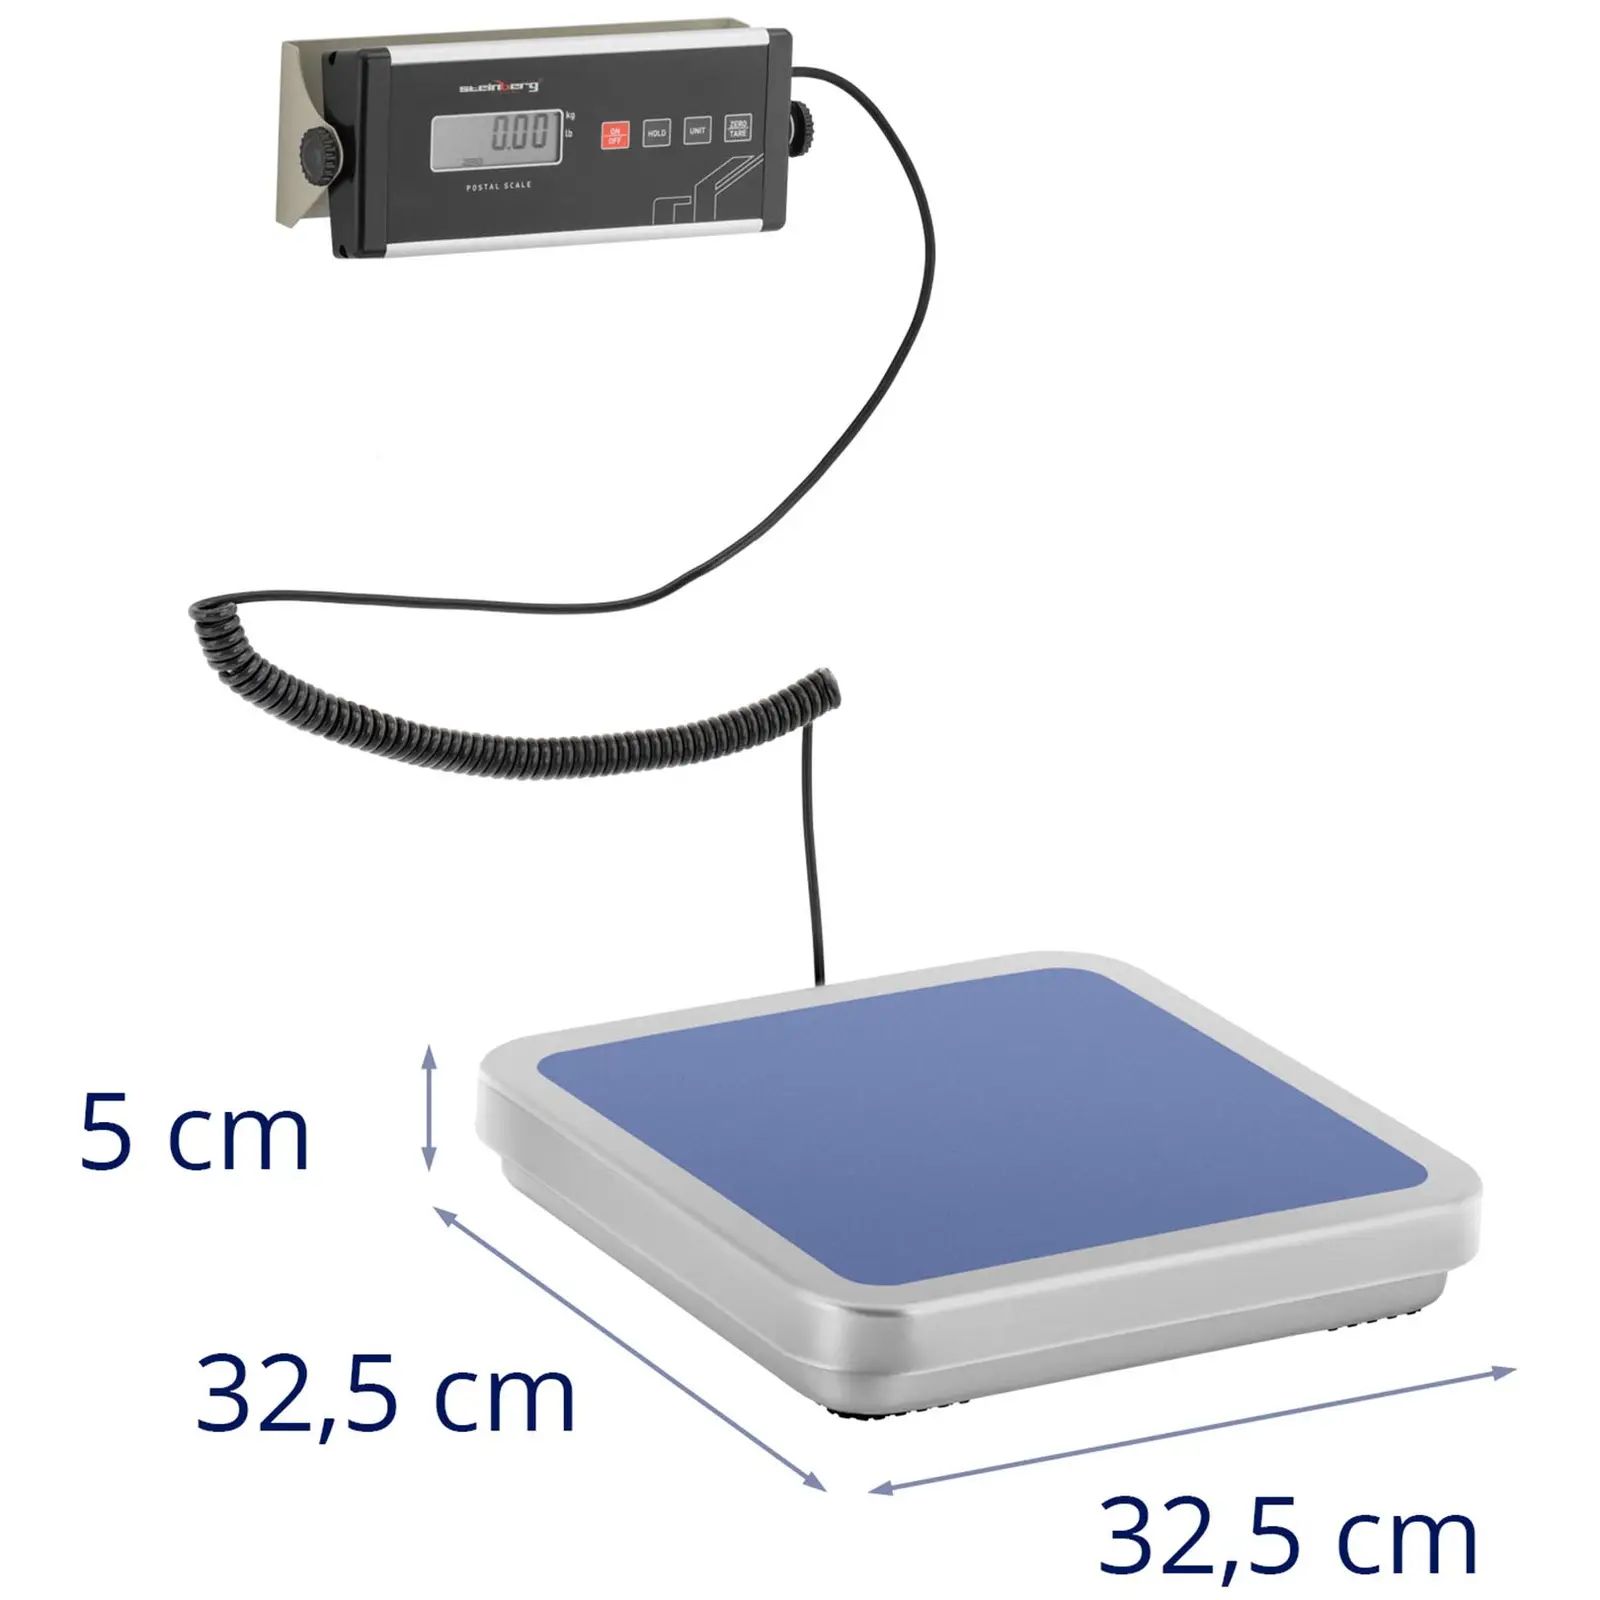 Outlet Waga paczkowa - 30 kg / 0,01 kg - 31,5 x 32,5 cm - zewn. wyświetlacz LCD